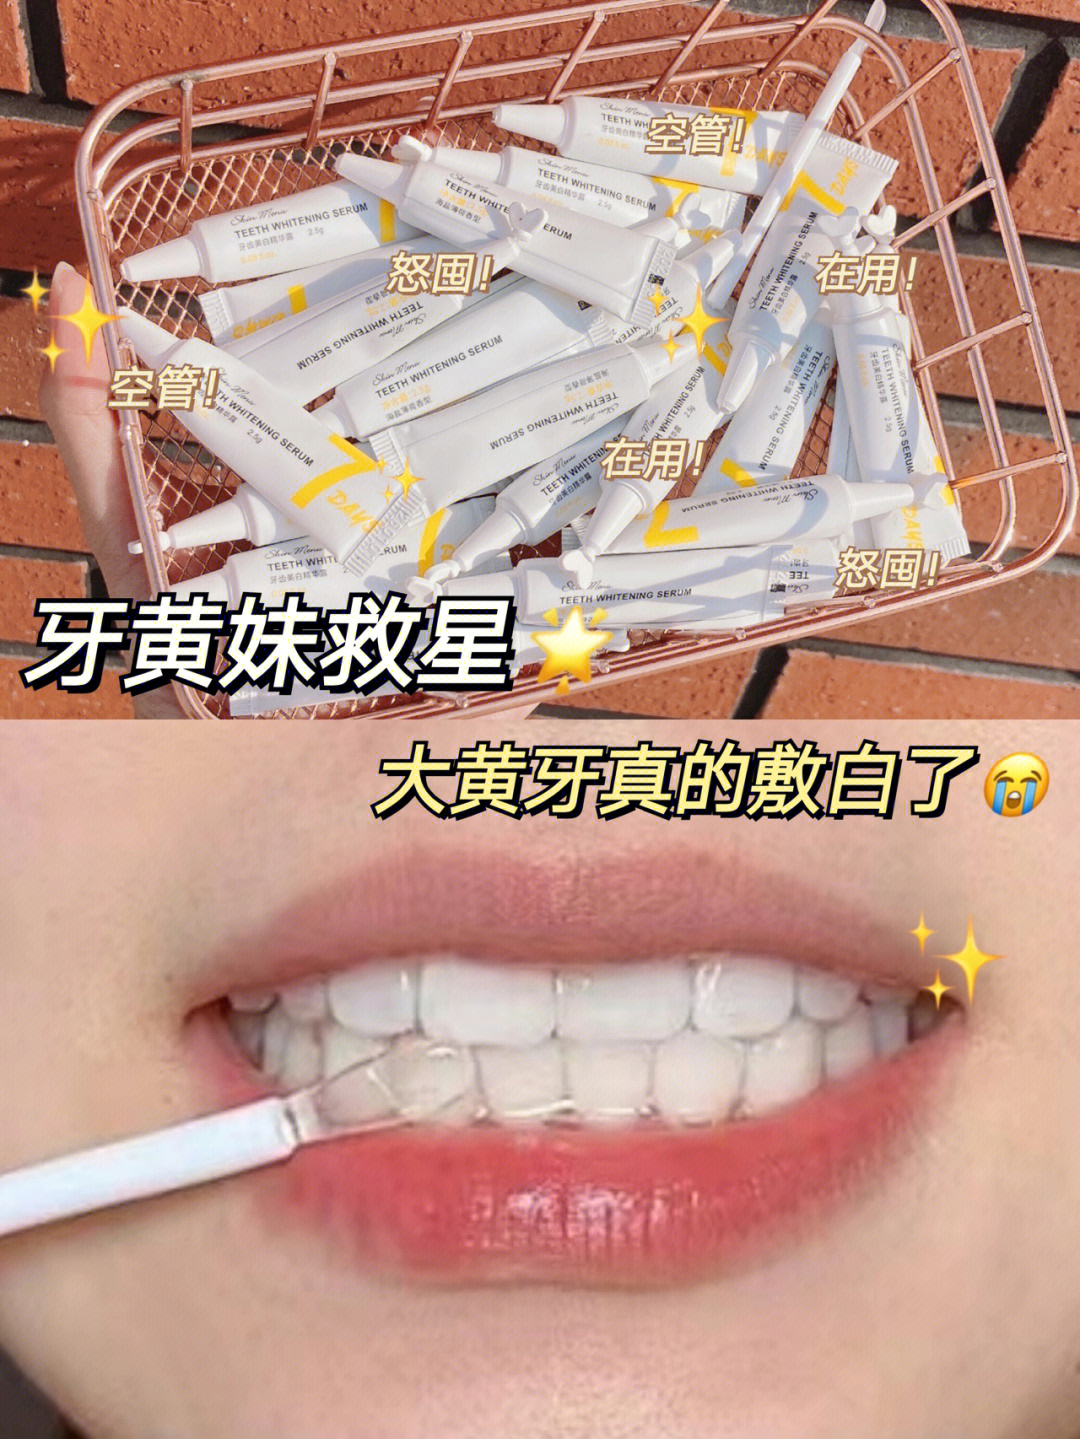 大黄牙怎么变成大白牙图片